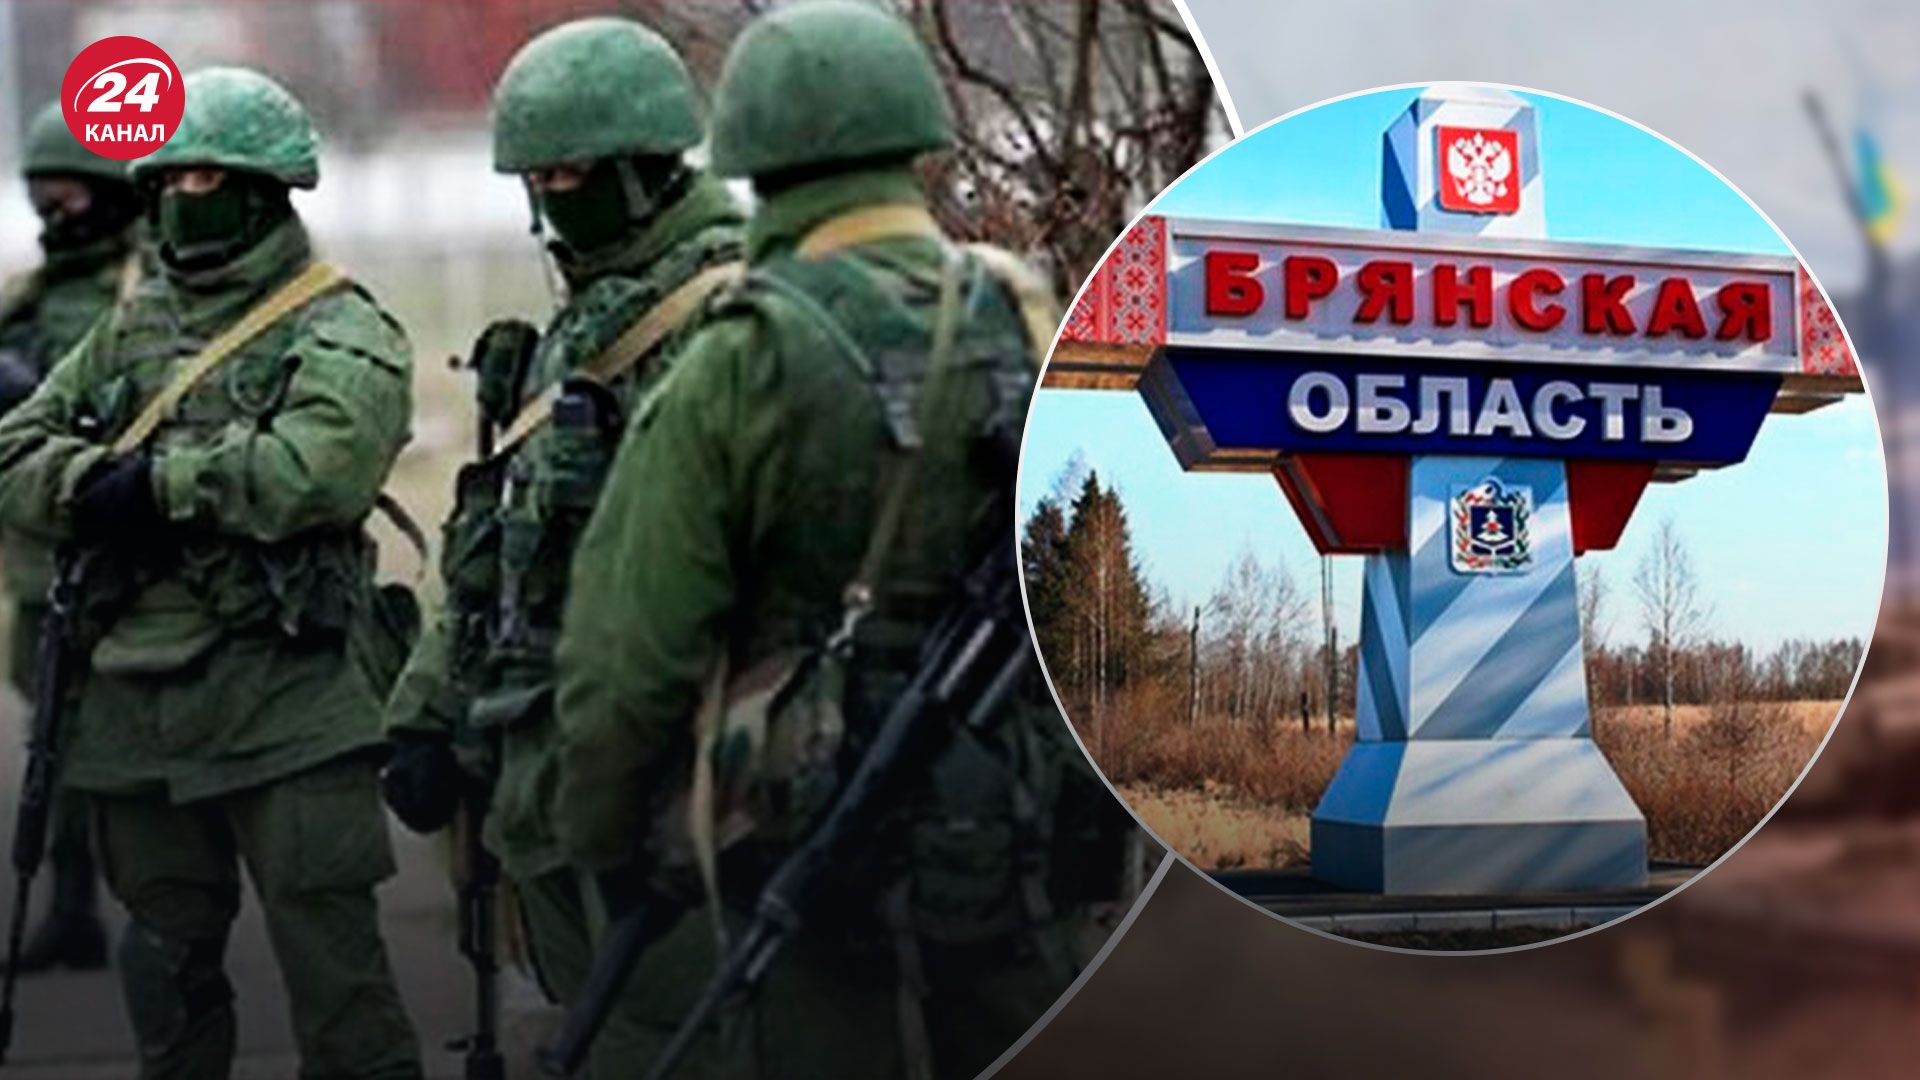 ДРГ в Брянске - Кремль может искать способ еще больше ограничить права россиян - 24 Канал